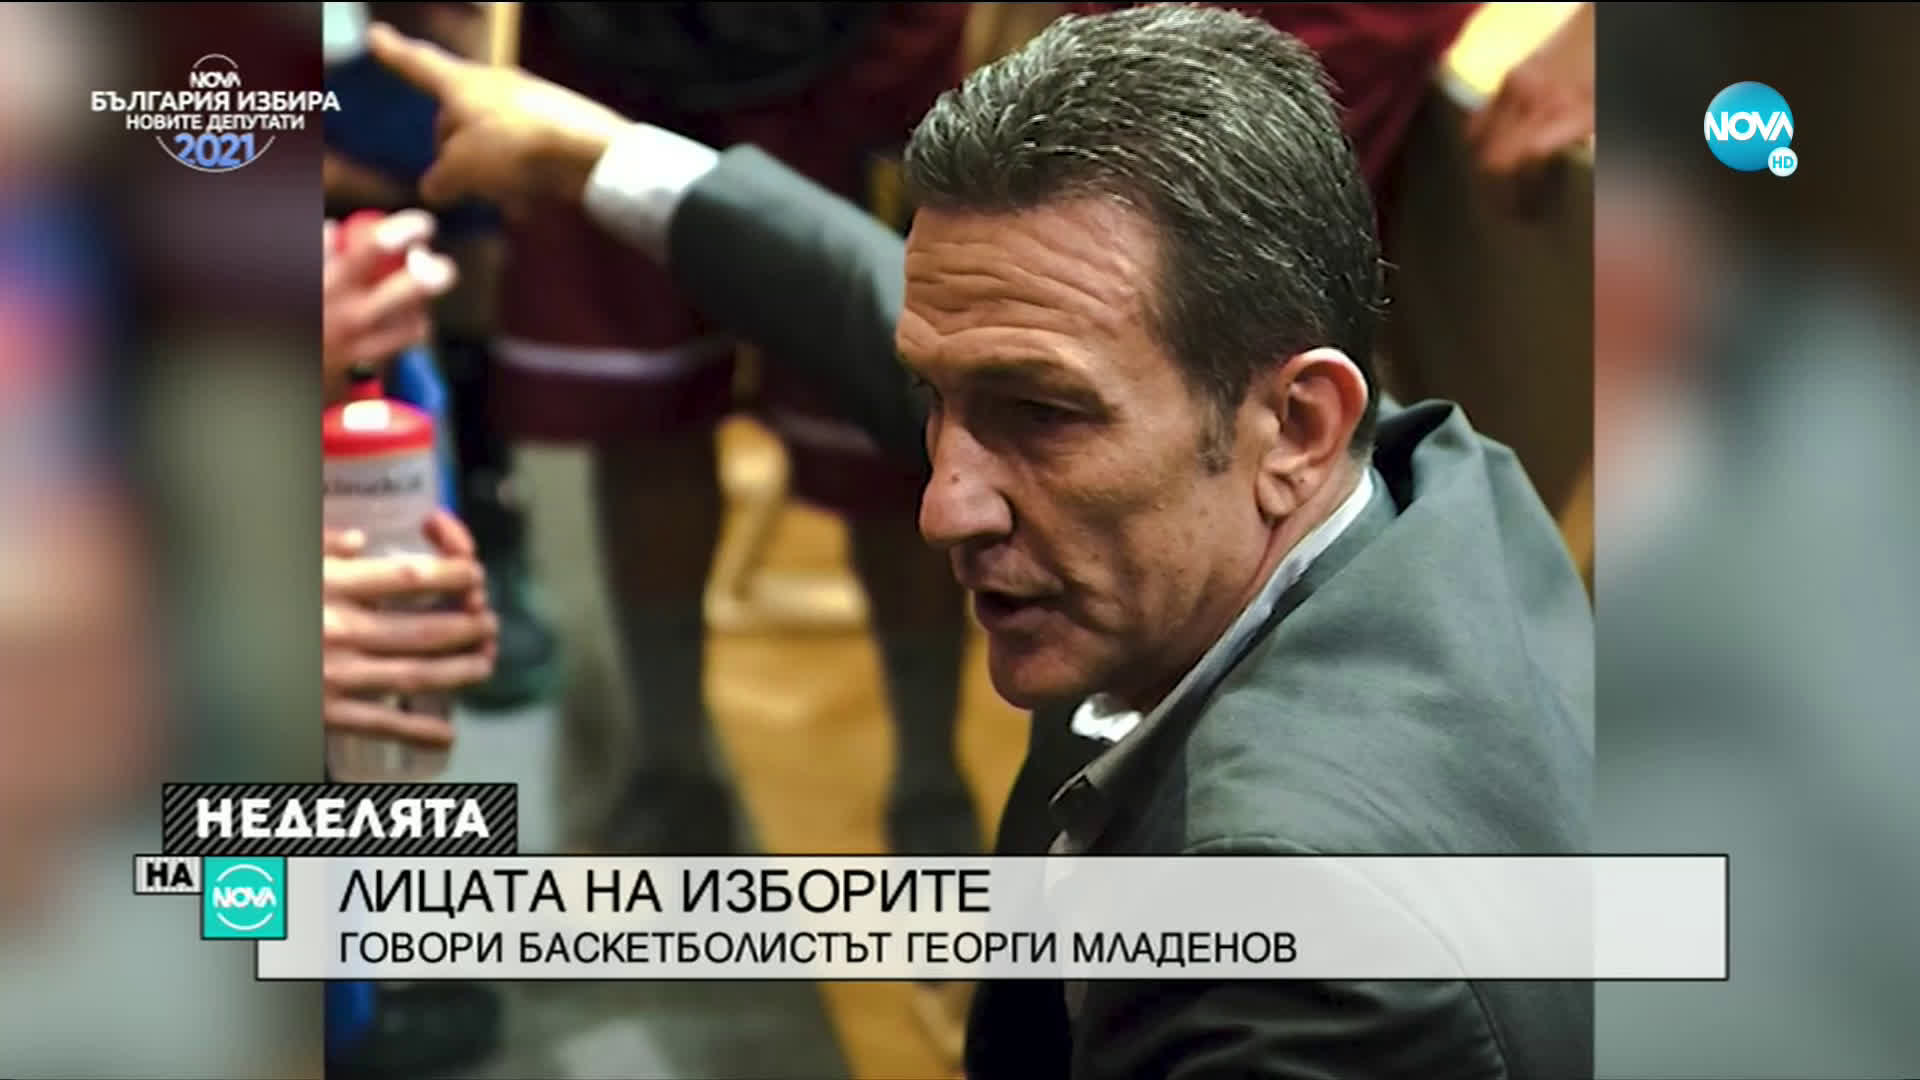 ЛИЦАТА НА ИЗБОРИТЕ: Баскетболистът Георги Младенов